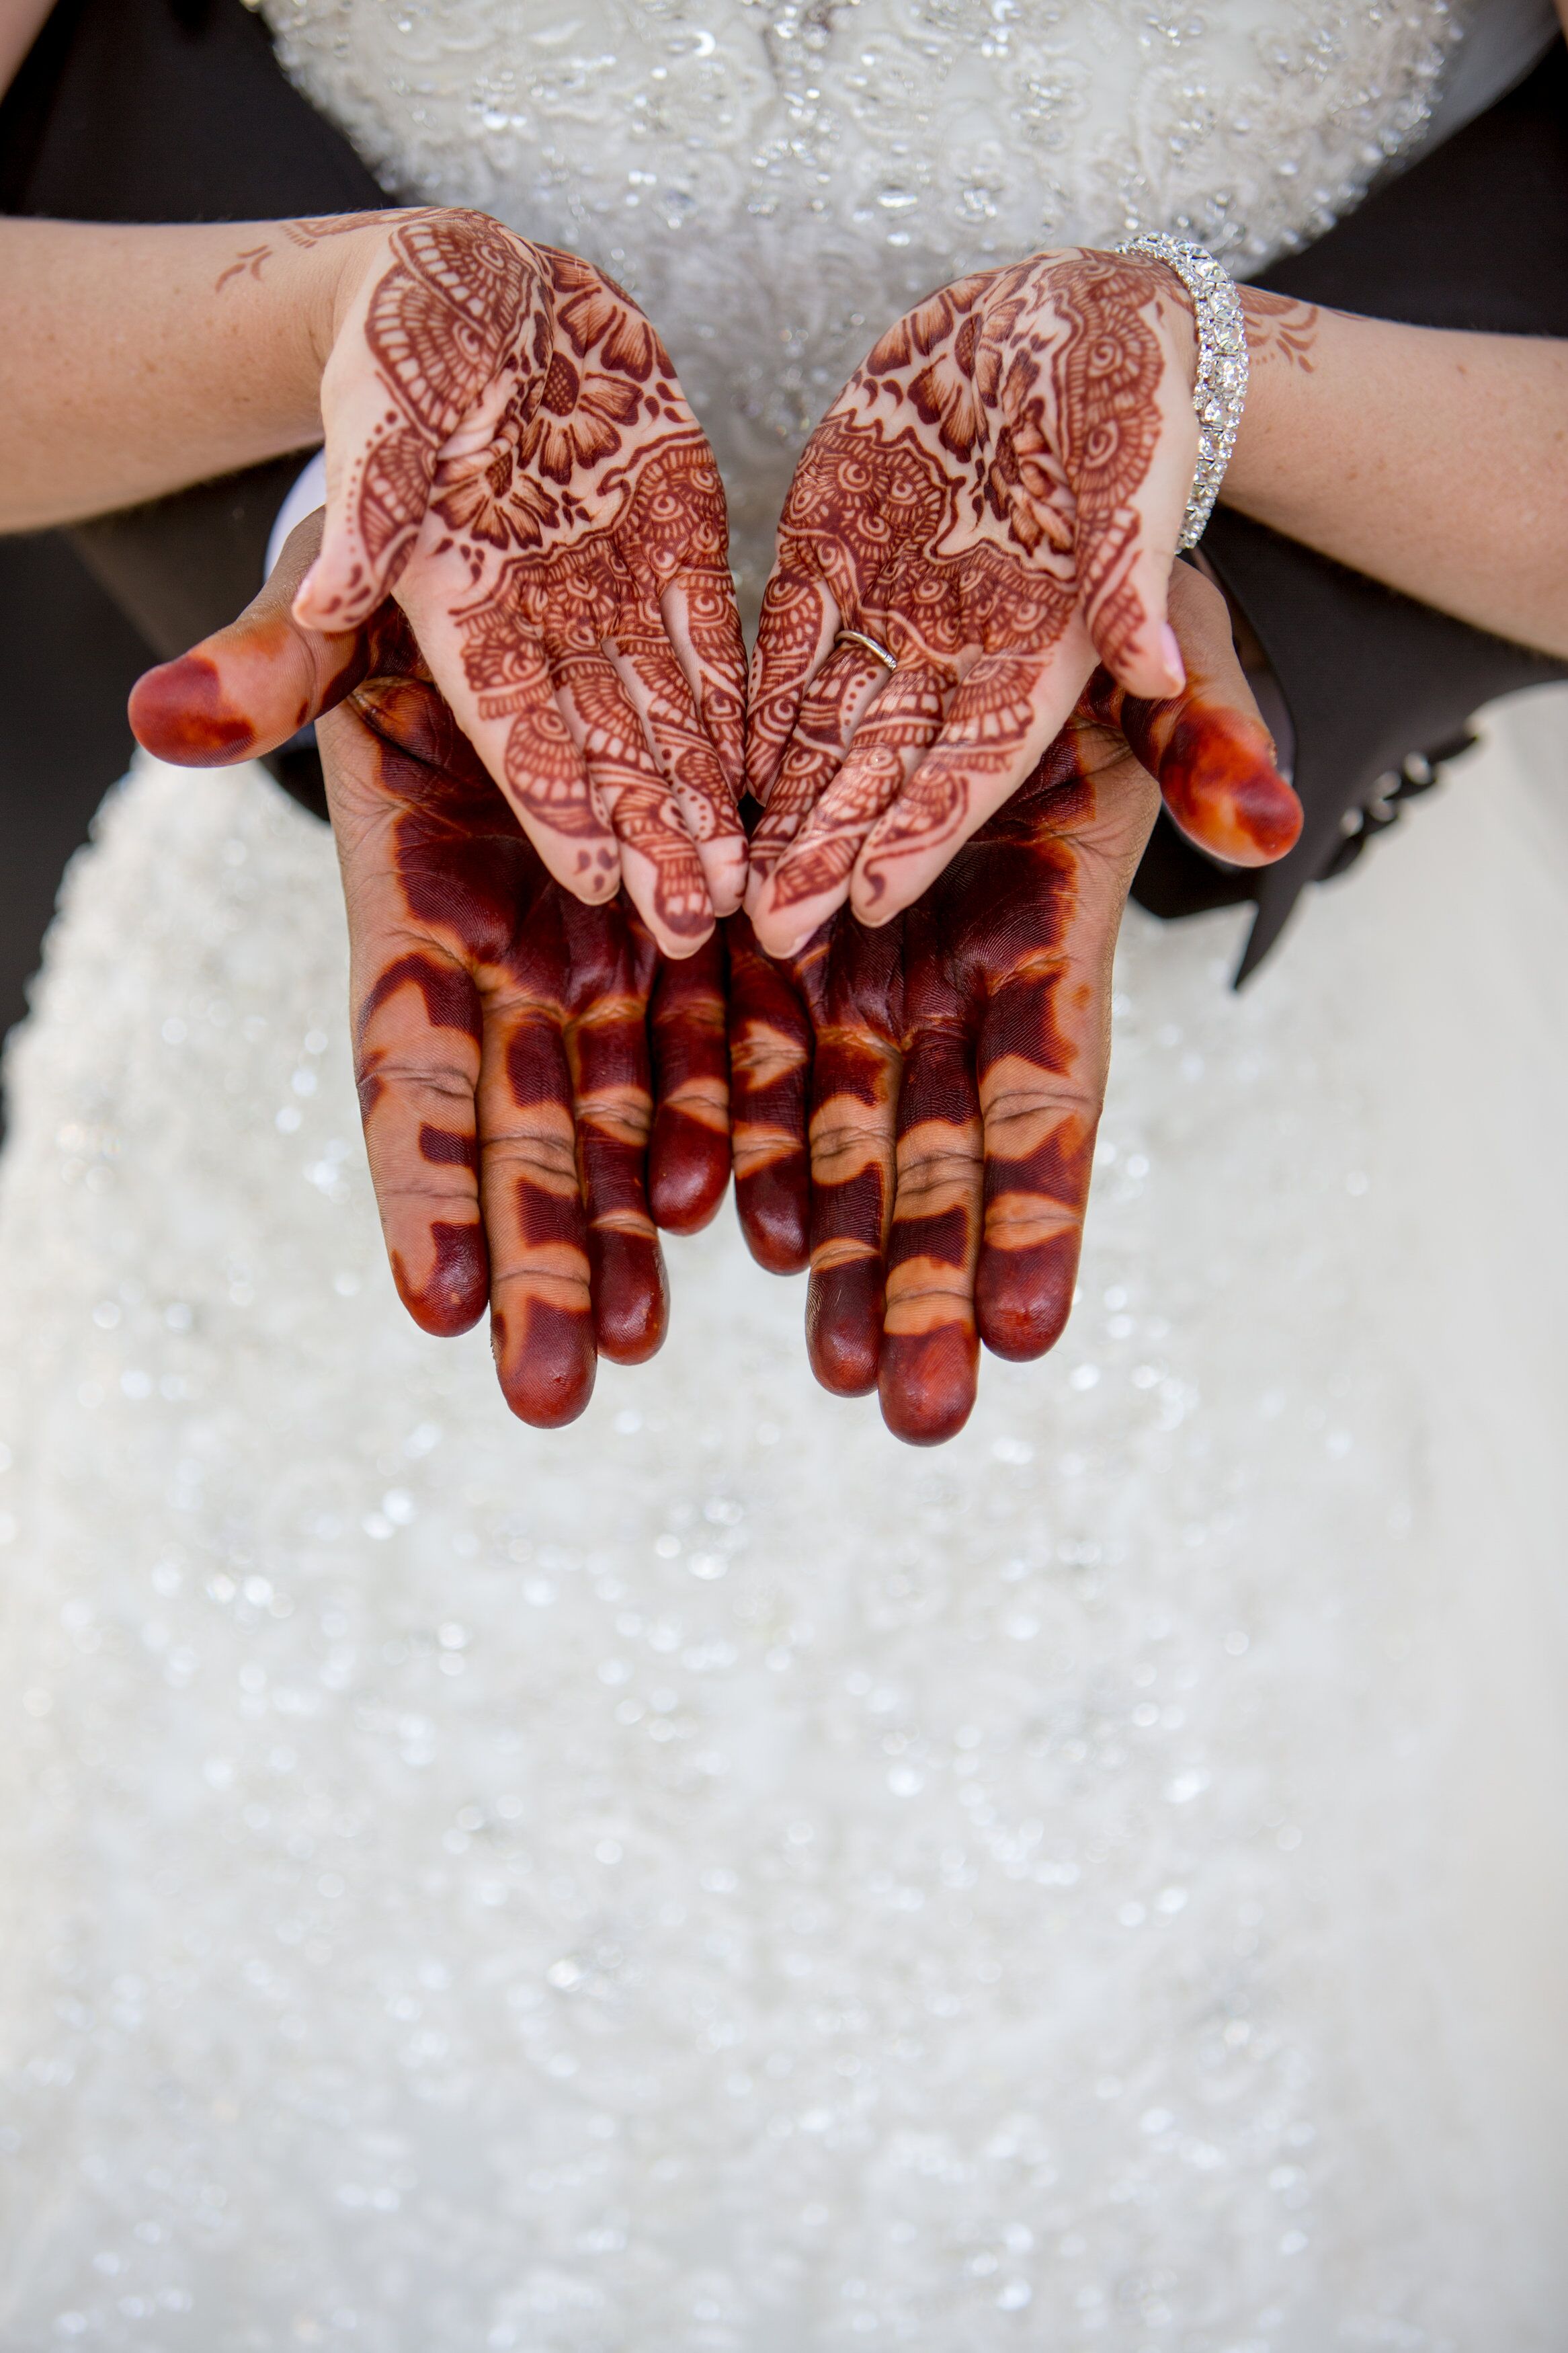 Traditional Sudanese Henna at Scottsdale, Arizona Wedding